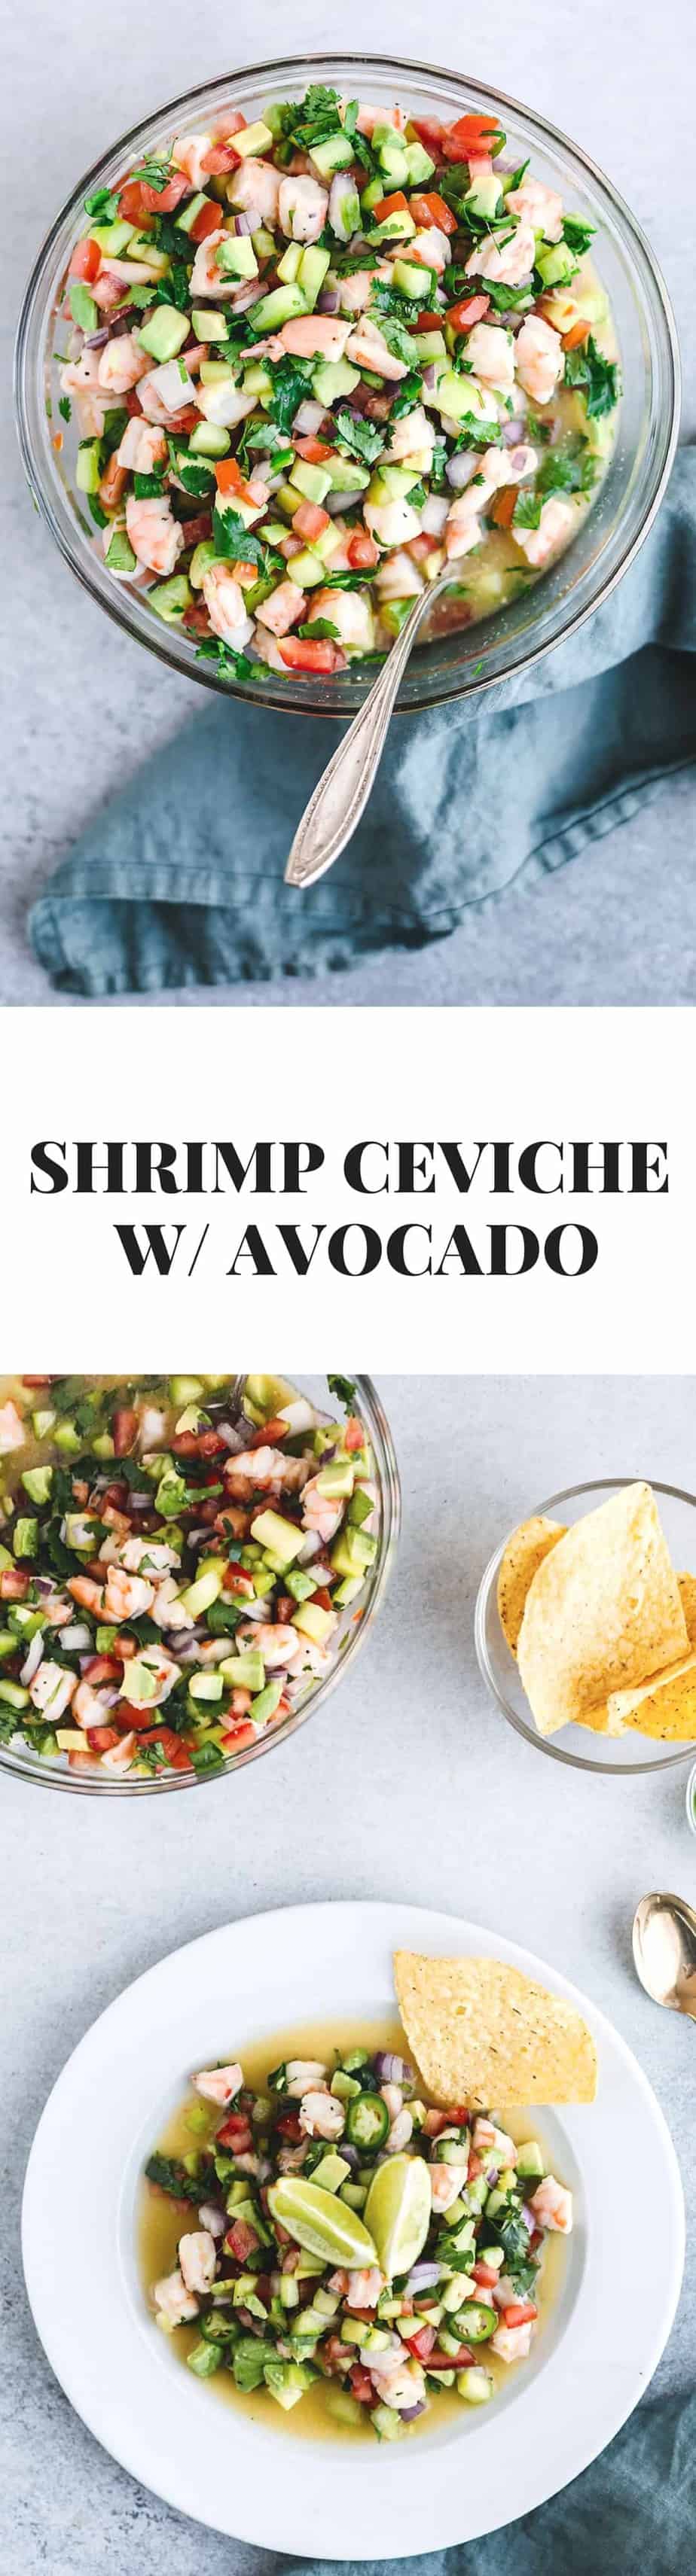 Shrimp Ceviche With Avocado